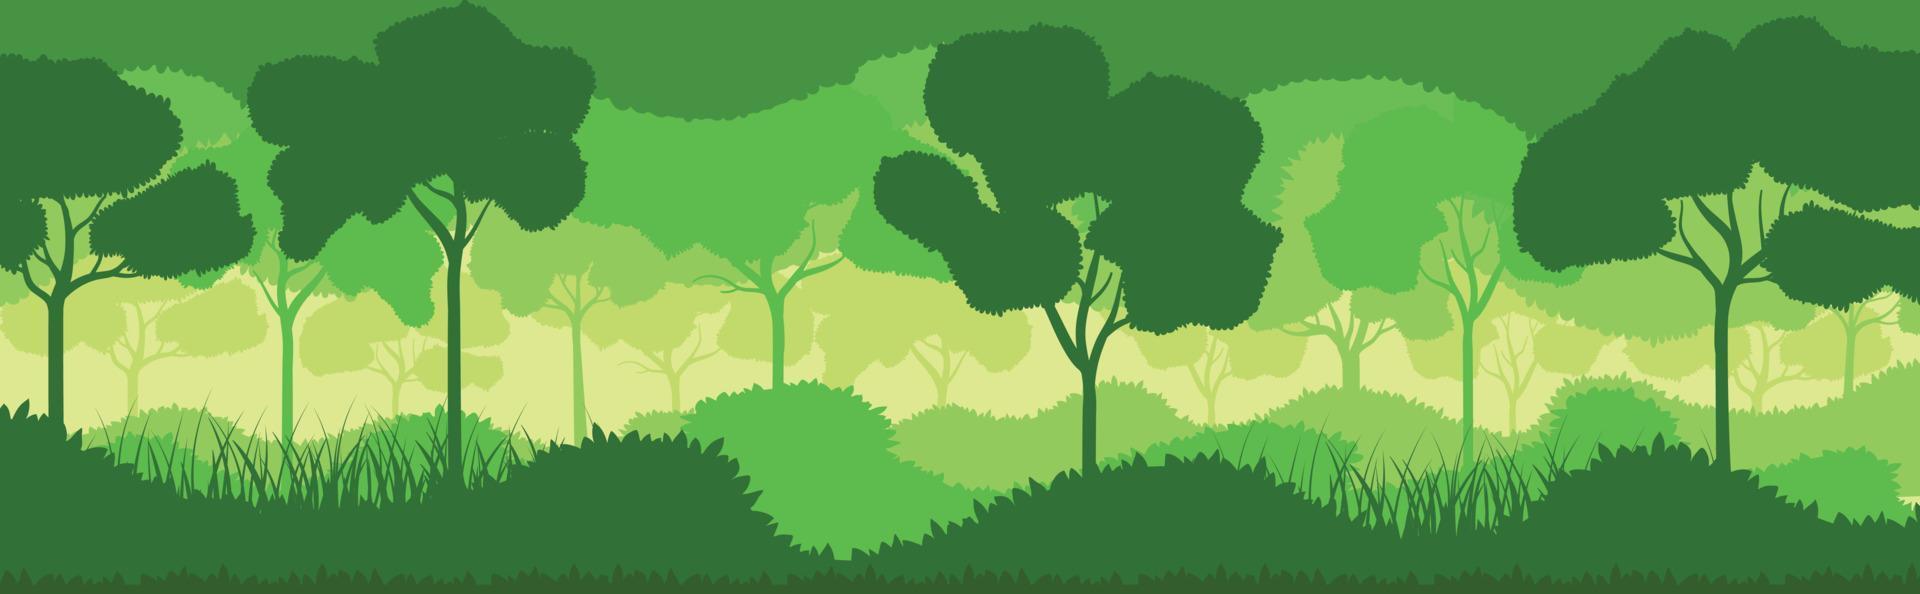 Vektor grüne Waldlandschaft mit Bäumen. Öko-Naturwald-Hintergrundvorlagen. Waldplantage mit Ökologie. grüner Wald Silhouette abstrakter Hintergrund. Natur- und Umweltschutz flach